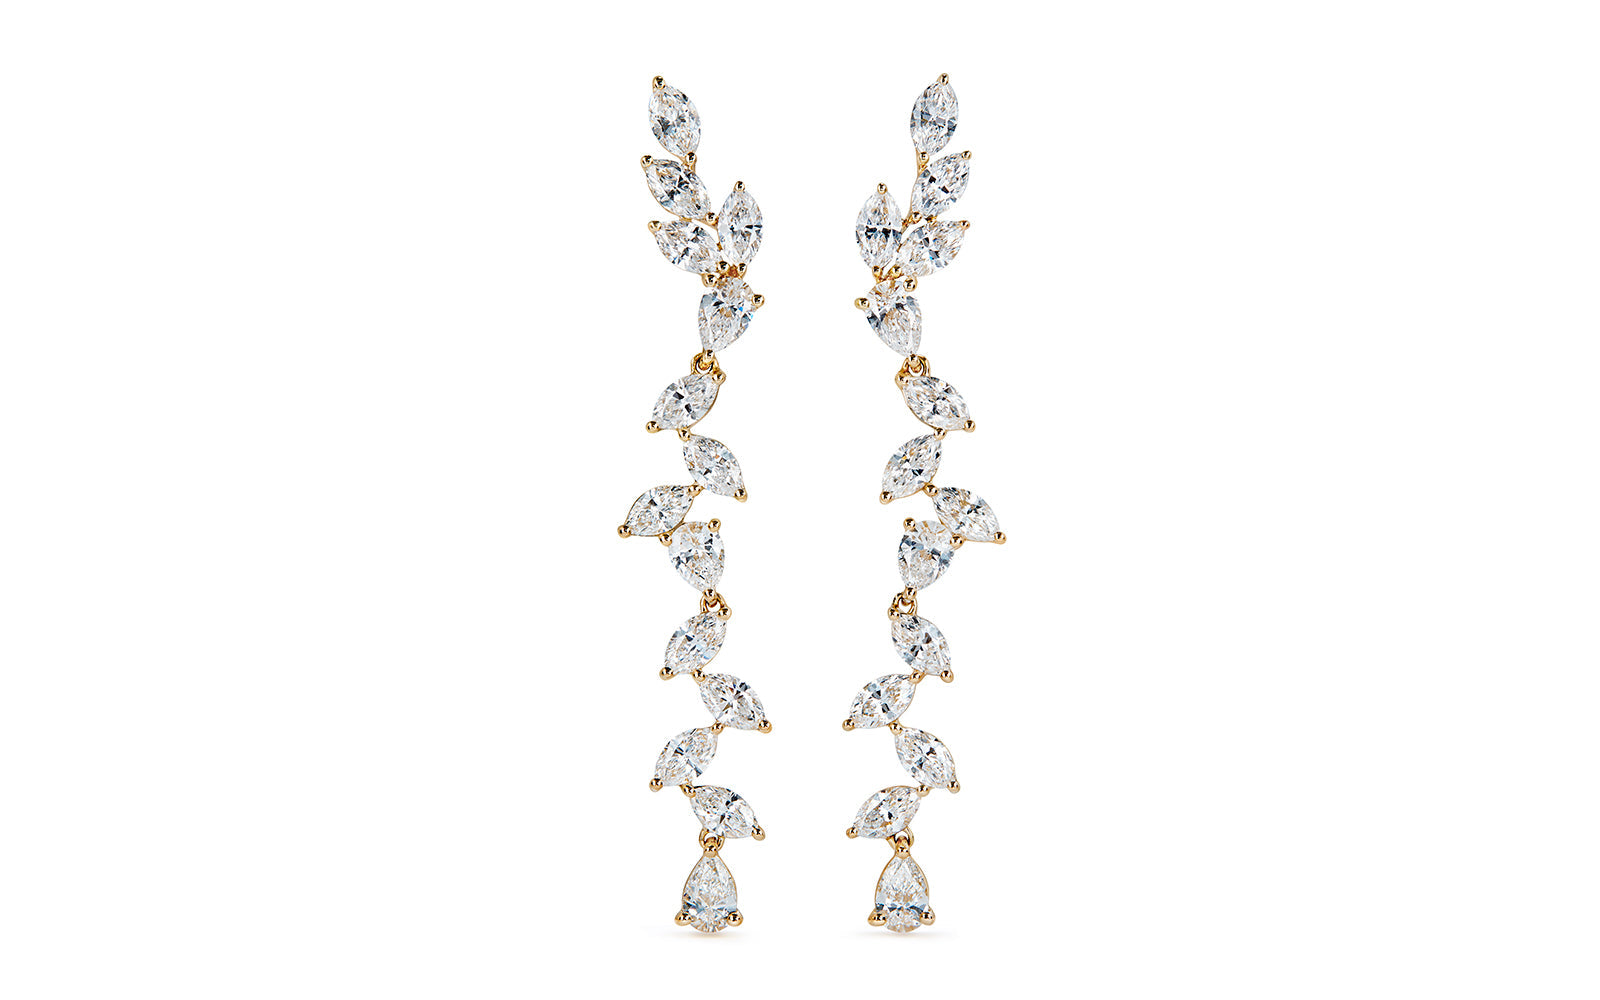 3.12ct D Flawless Diamond Earrings set in 18K Yellow Gold